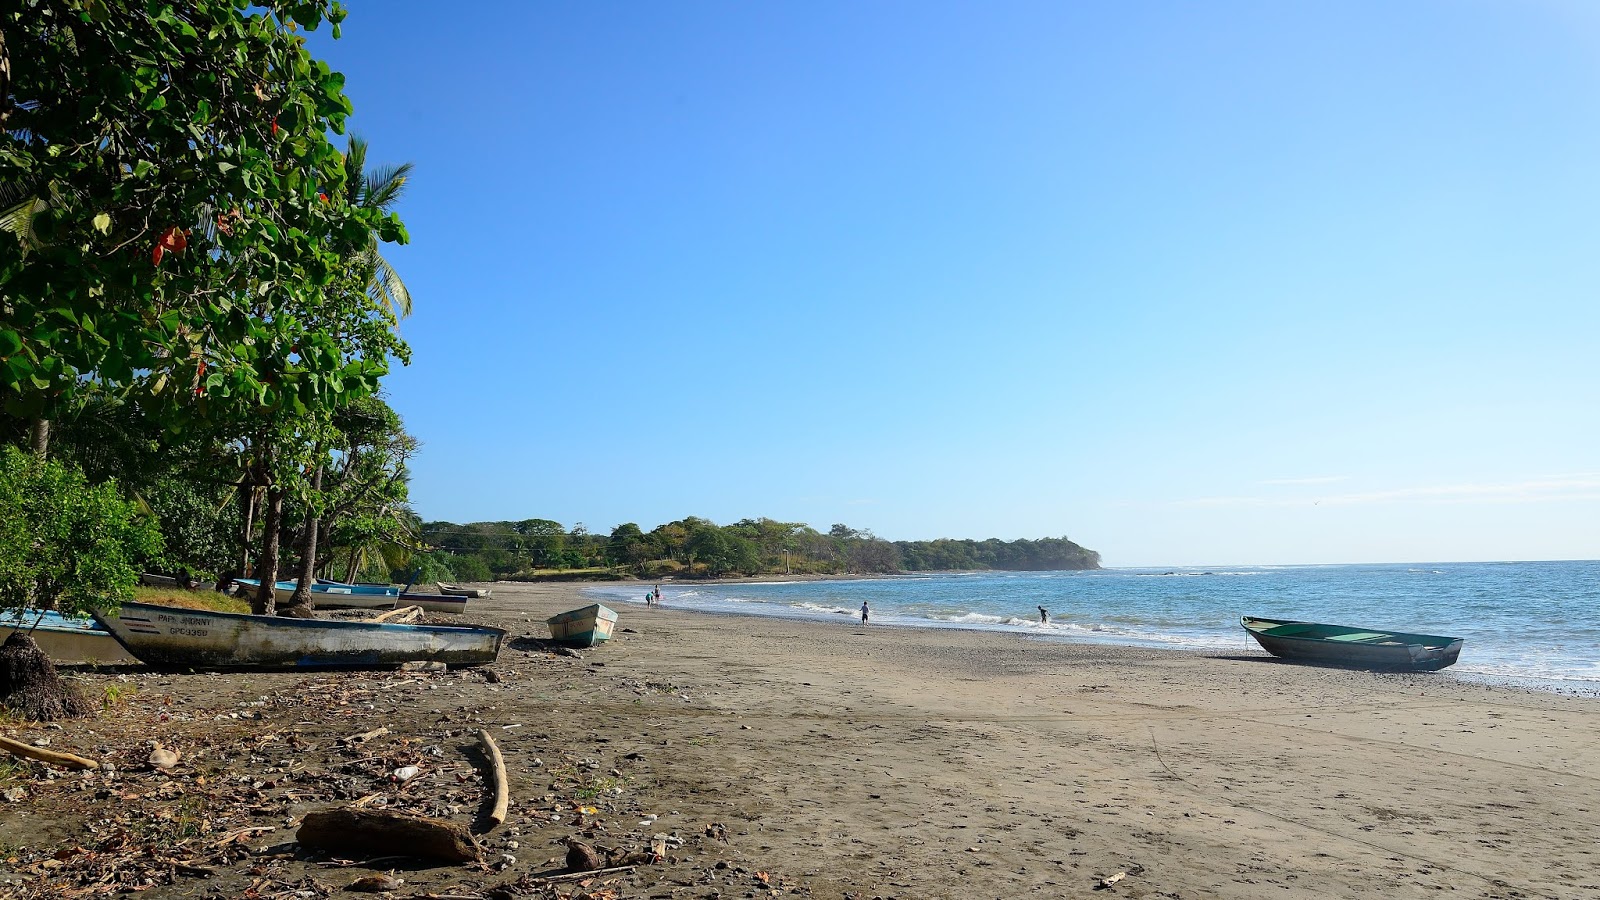 Lagarto Beach'in fotoğrafı gri kum yüzey ile